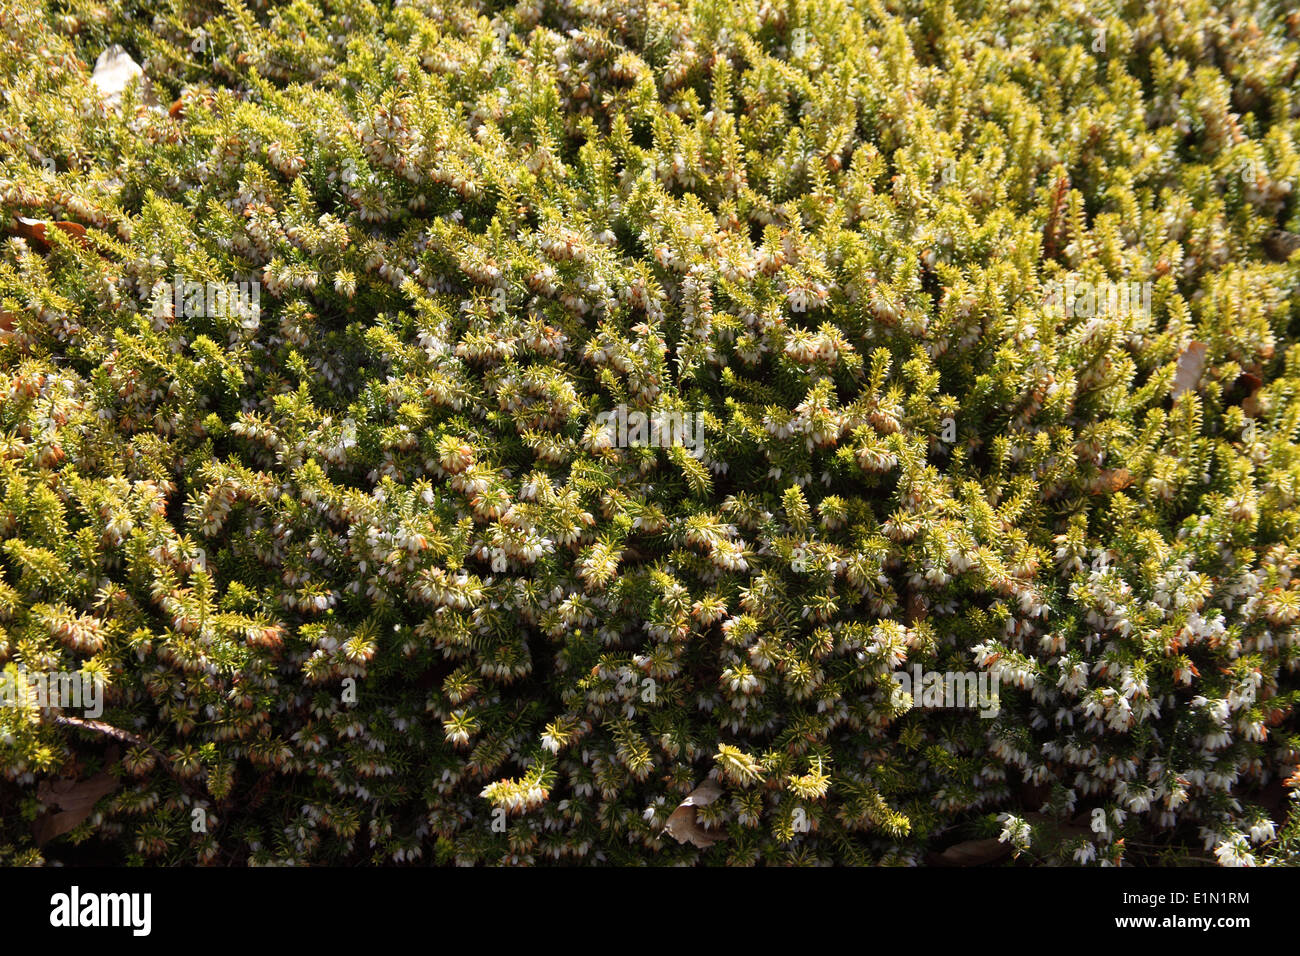 Erica x darleyensis 'Golden Starlet' plant in flower Stock Photo